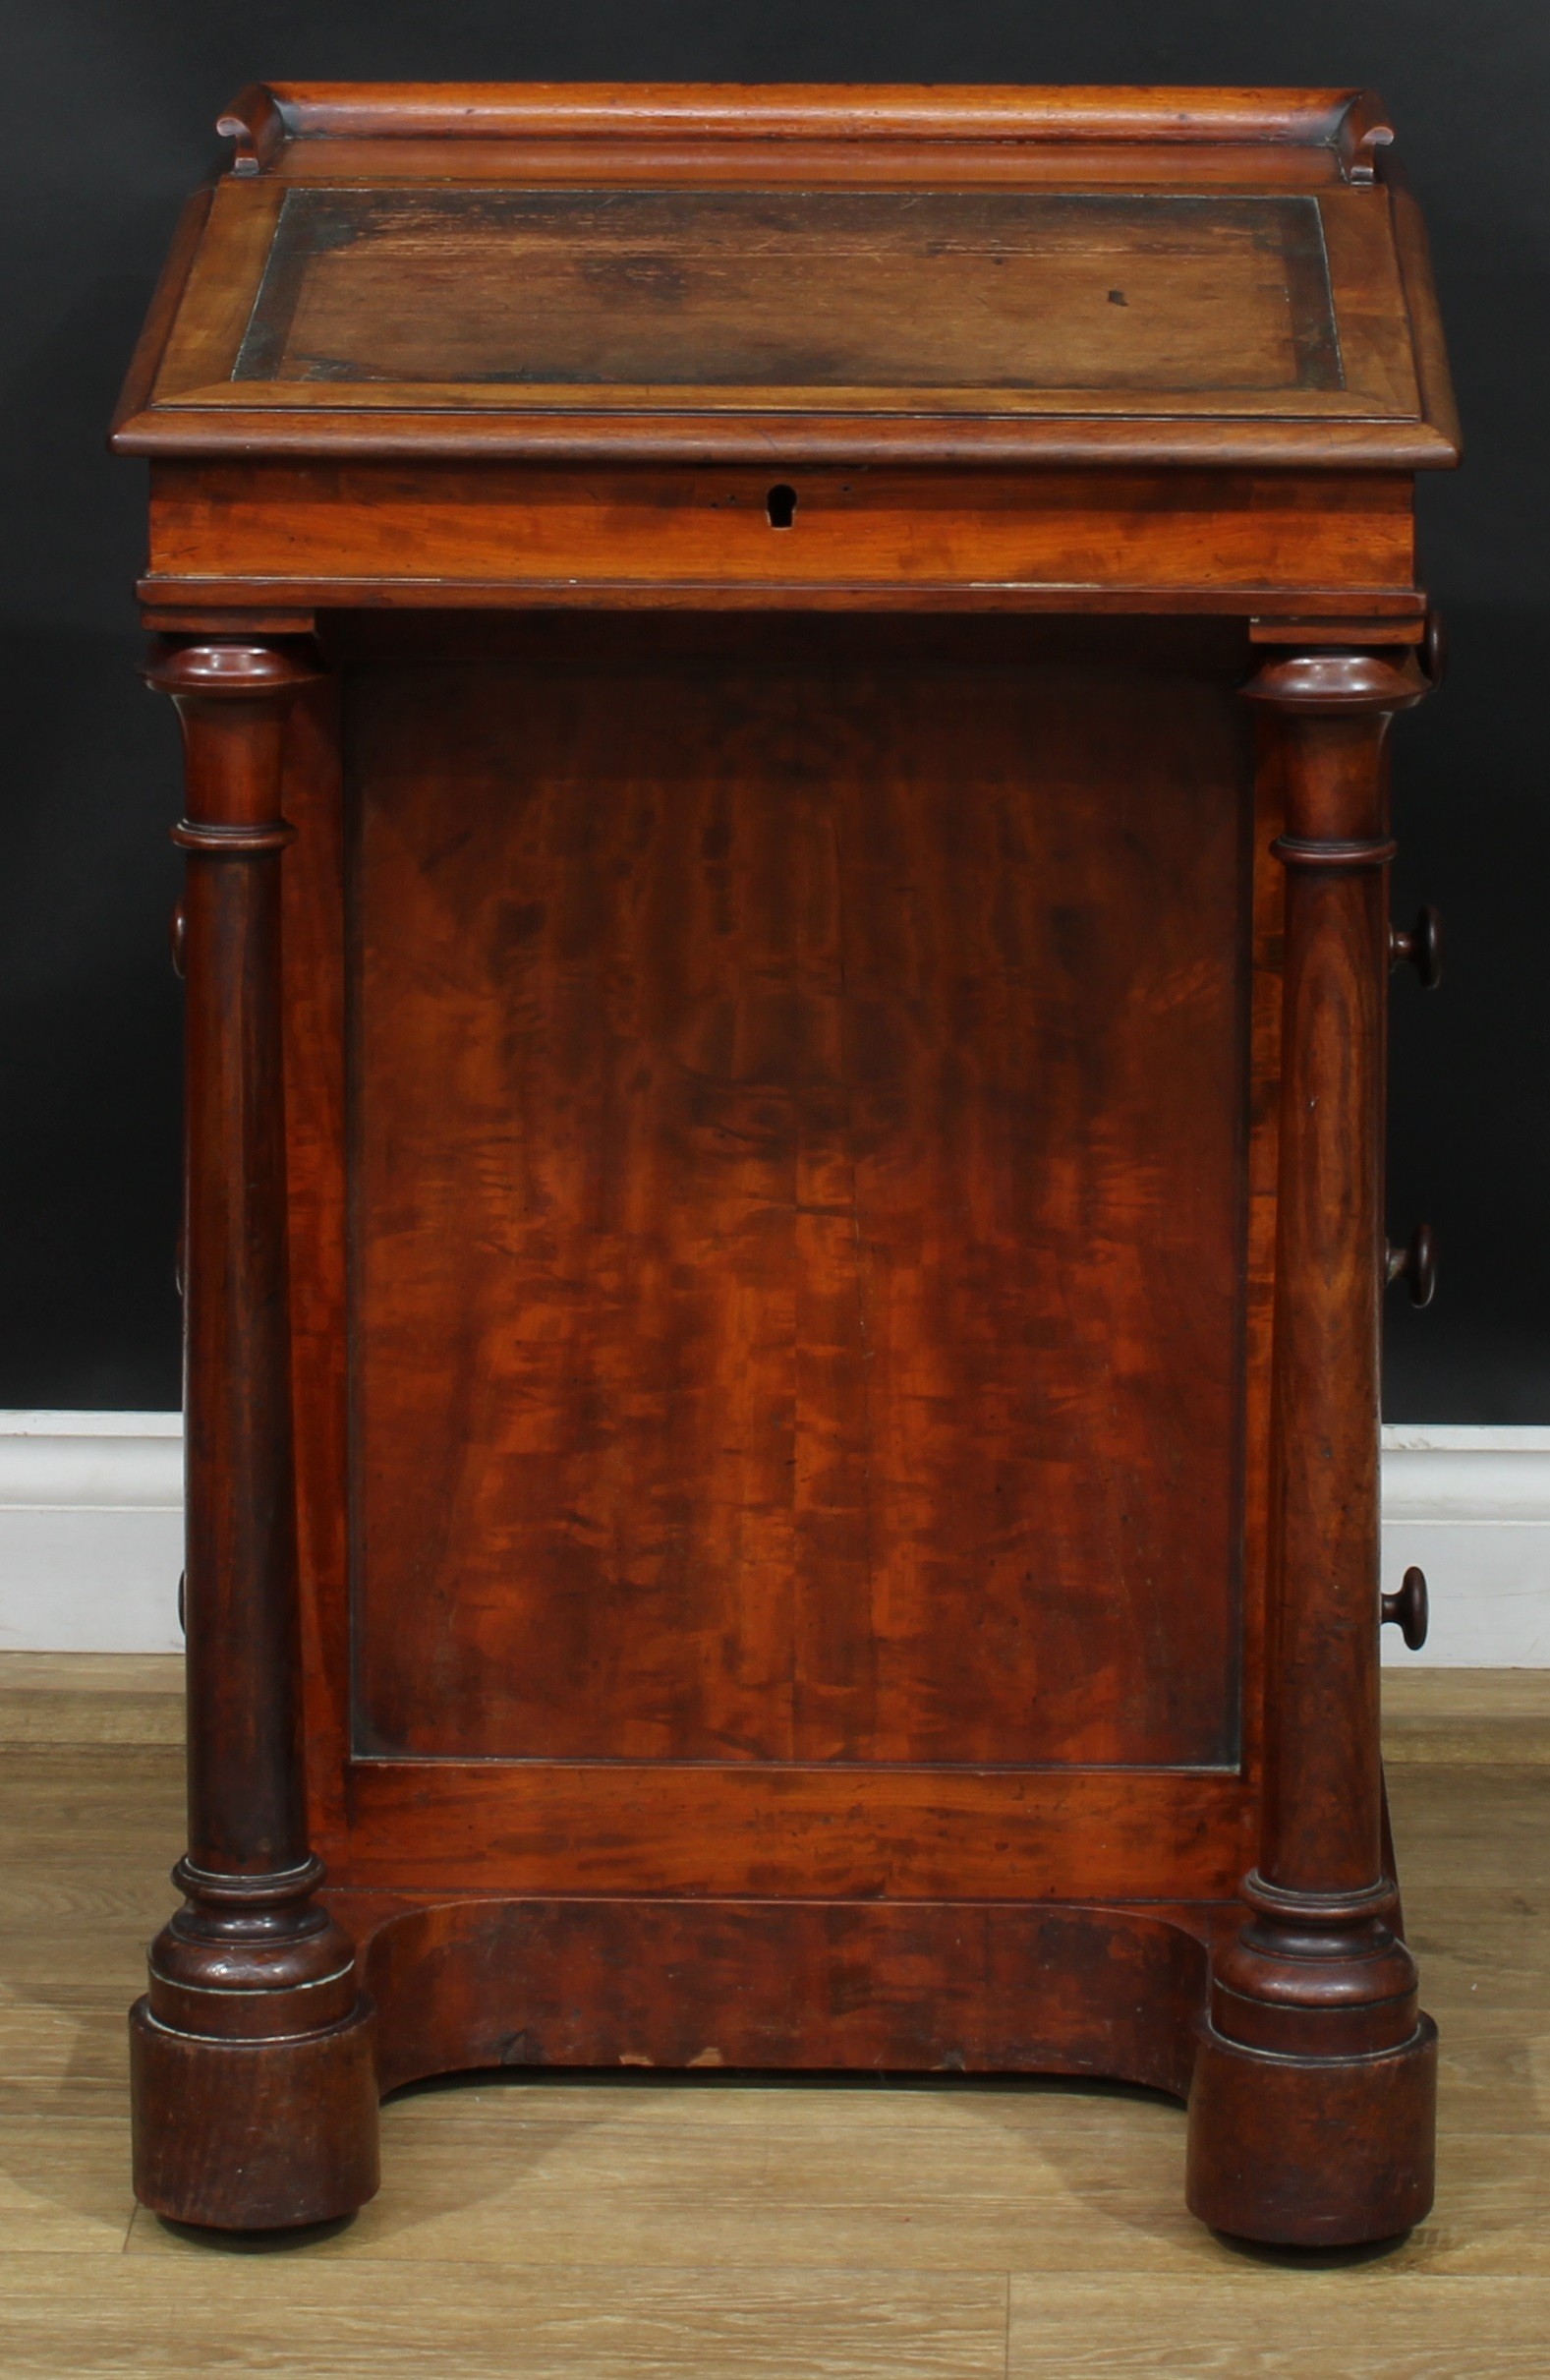 A 19th century mahogany Davenport desk, 83.5cm high, 54cm wide, 54cm deep